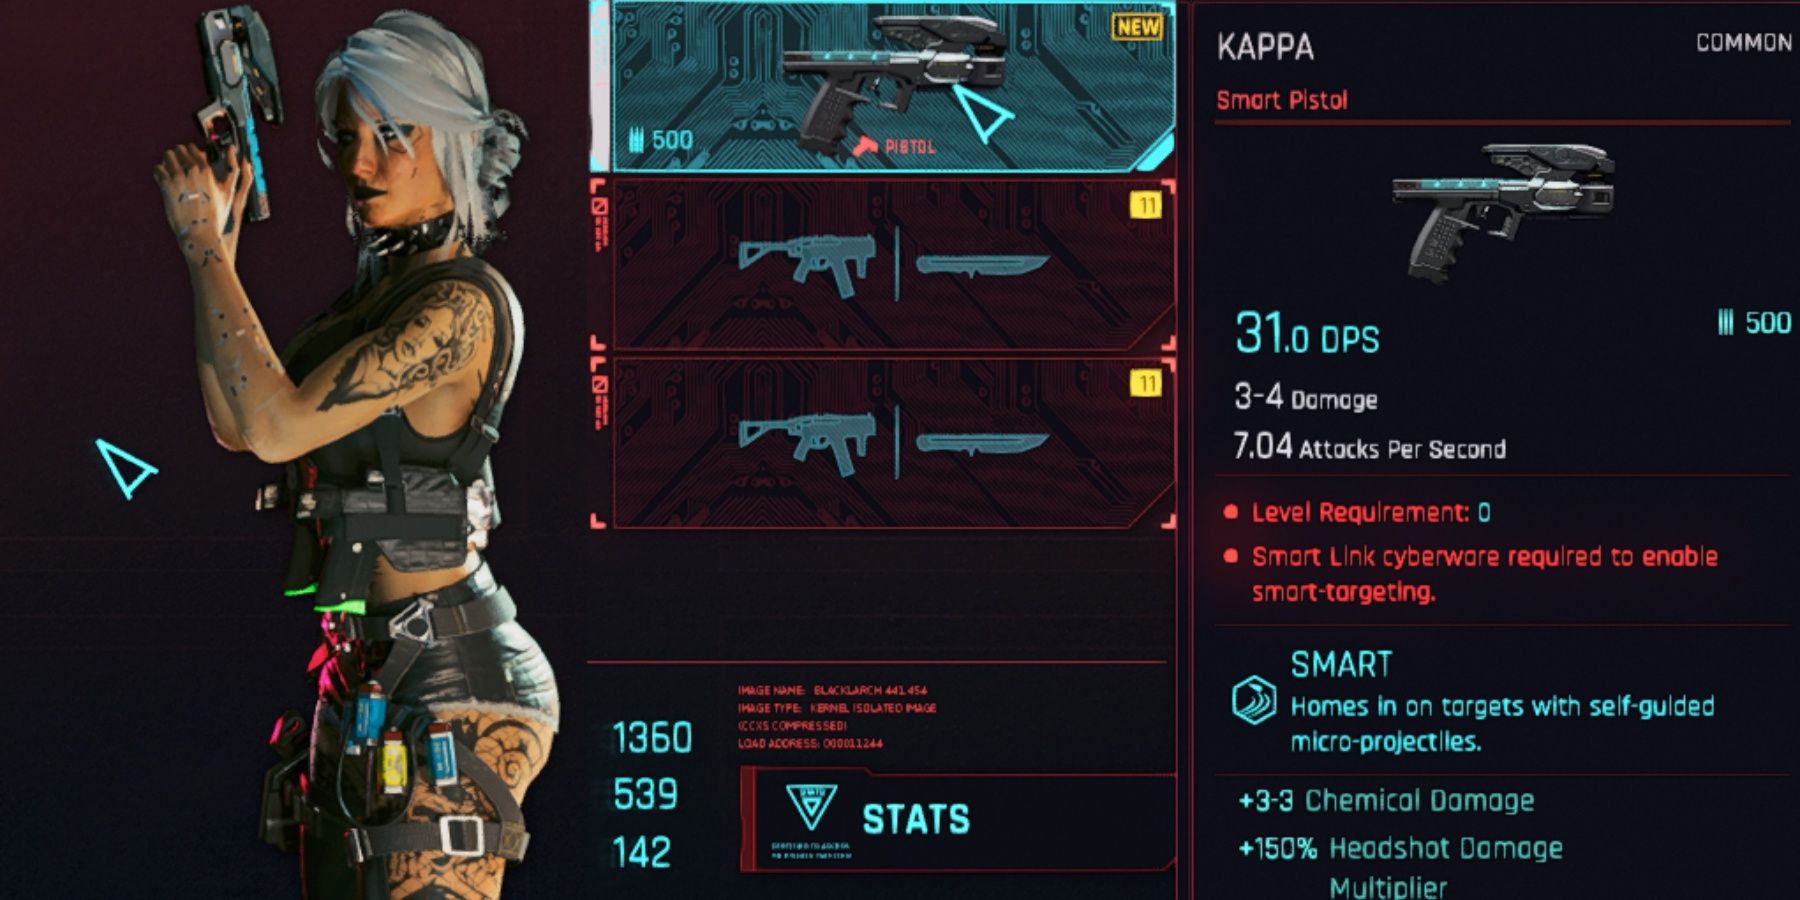 Kappa Smart Pistol in CP2077